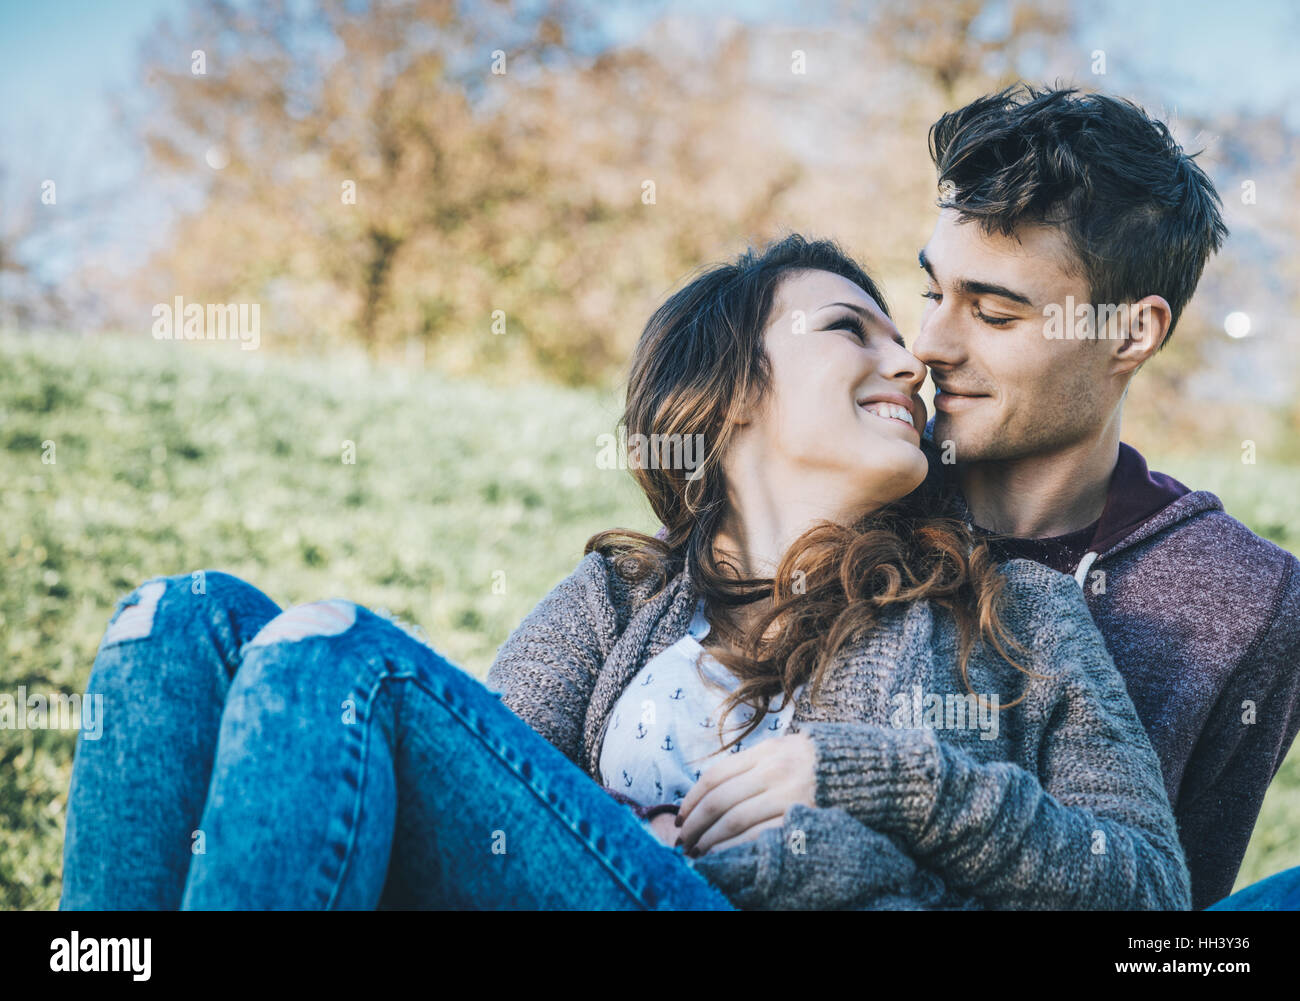 Glückliches junges Paar sitzen auf dem Rasen, umarmen und küssen im Freien, Liebe und Romantik Konzept Stockfoto